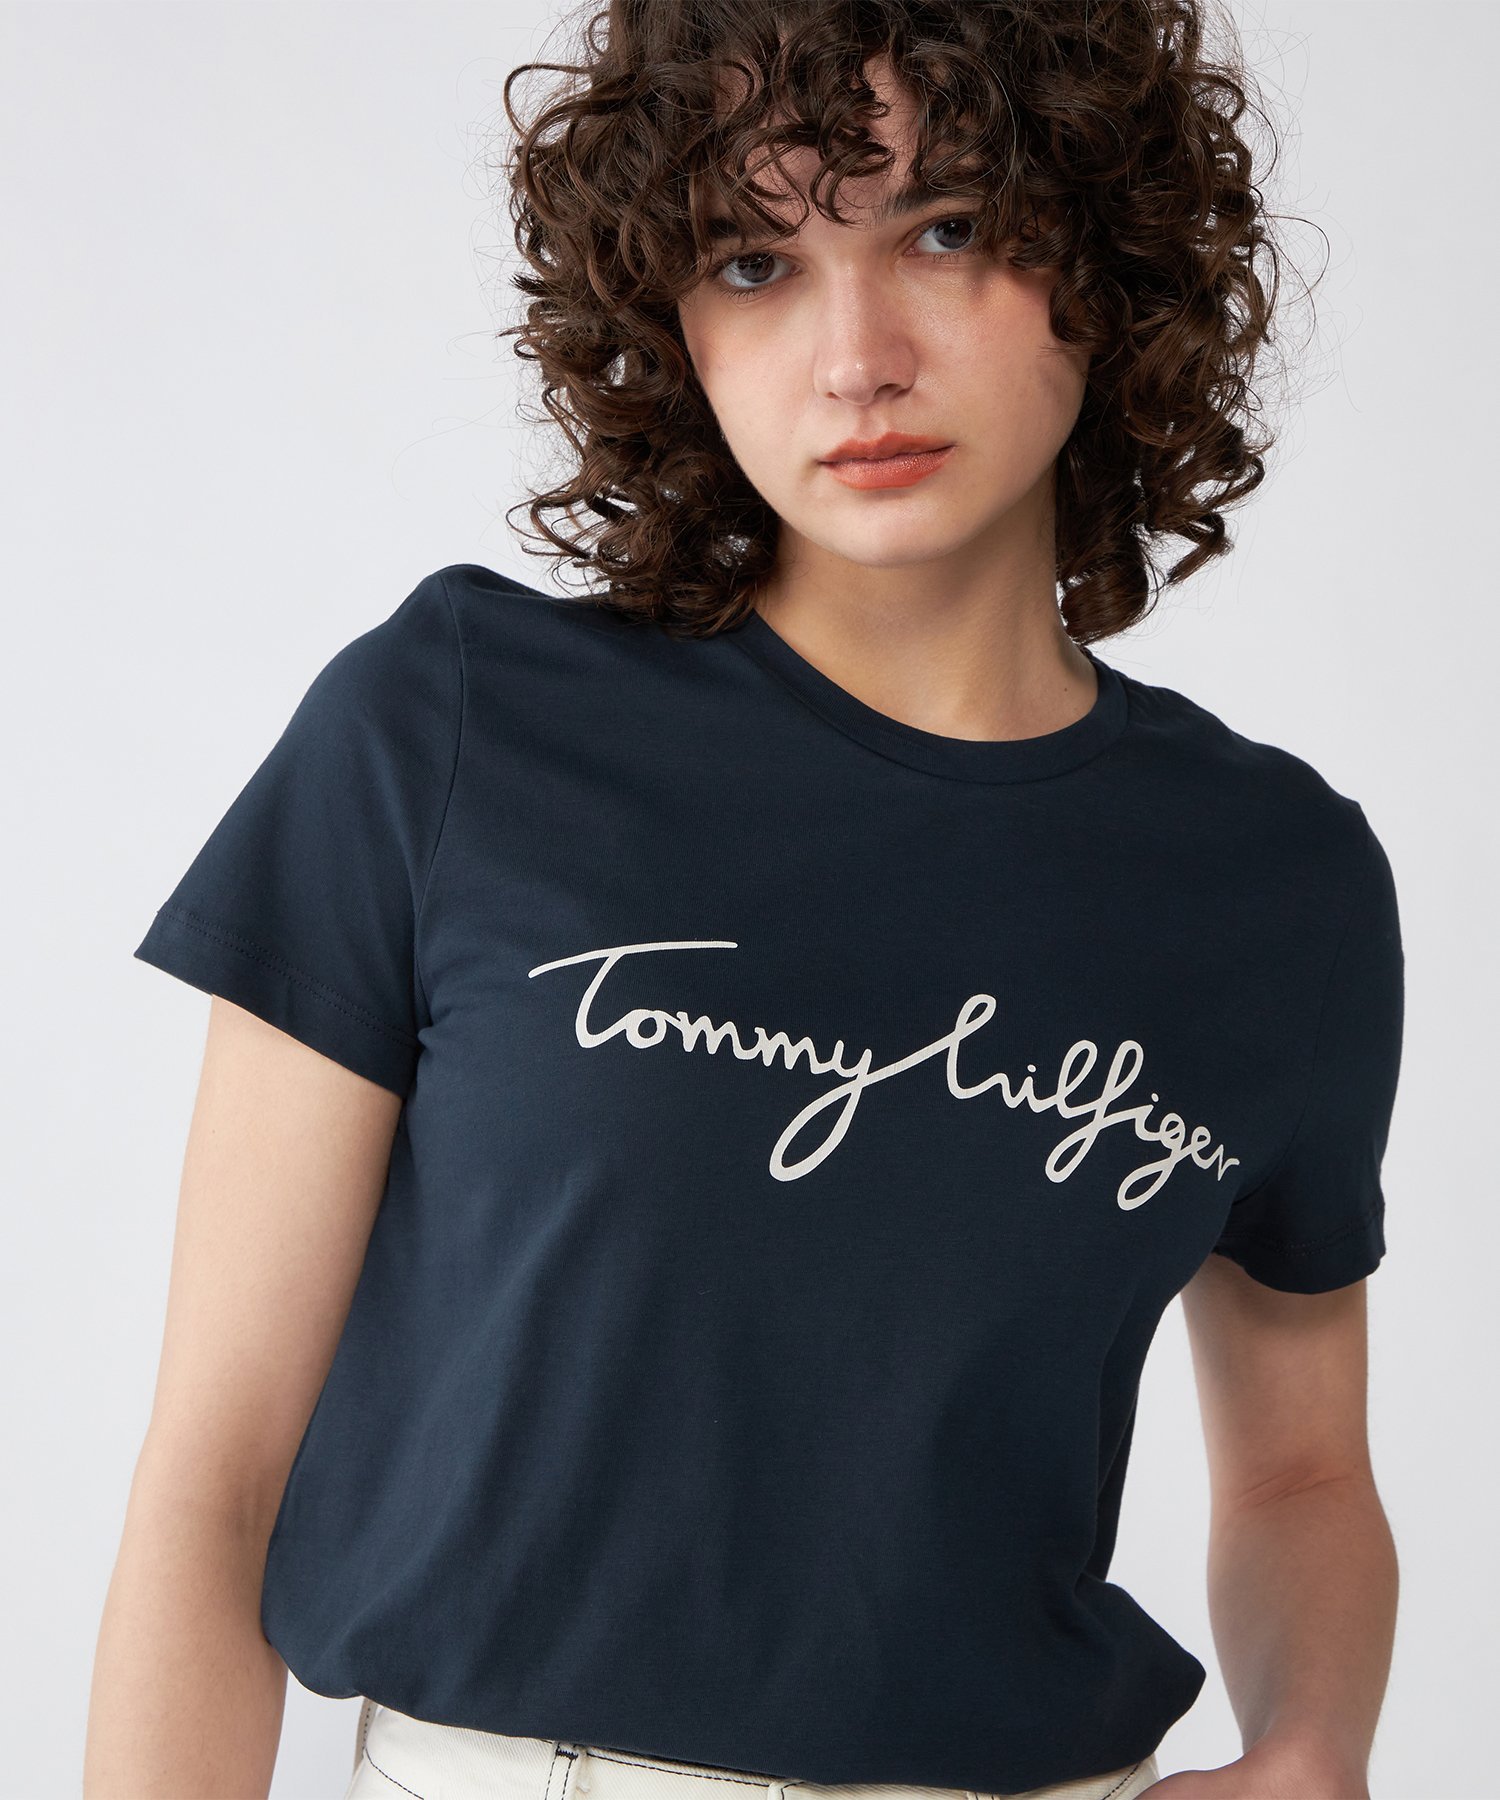 TOMMY HILFIGER ロゴクルーネックTシャツ トミーヒルフィガー トップス カットソー・Tシャツ ネイビー ブラック ホワイト